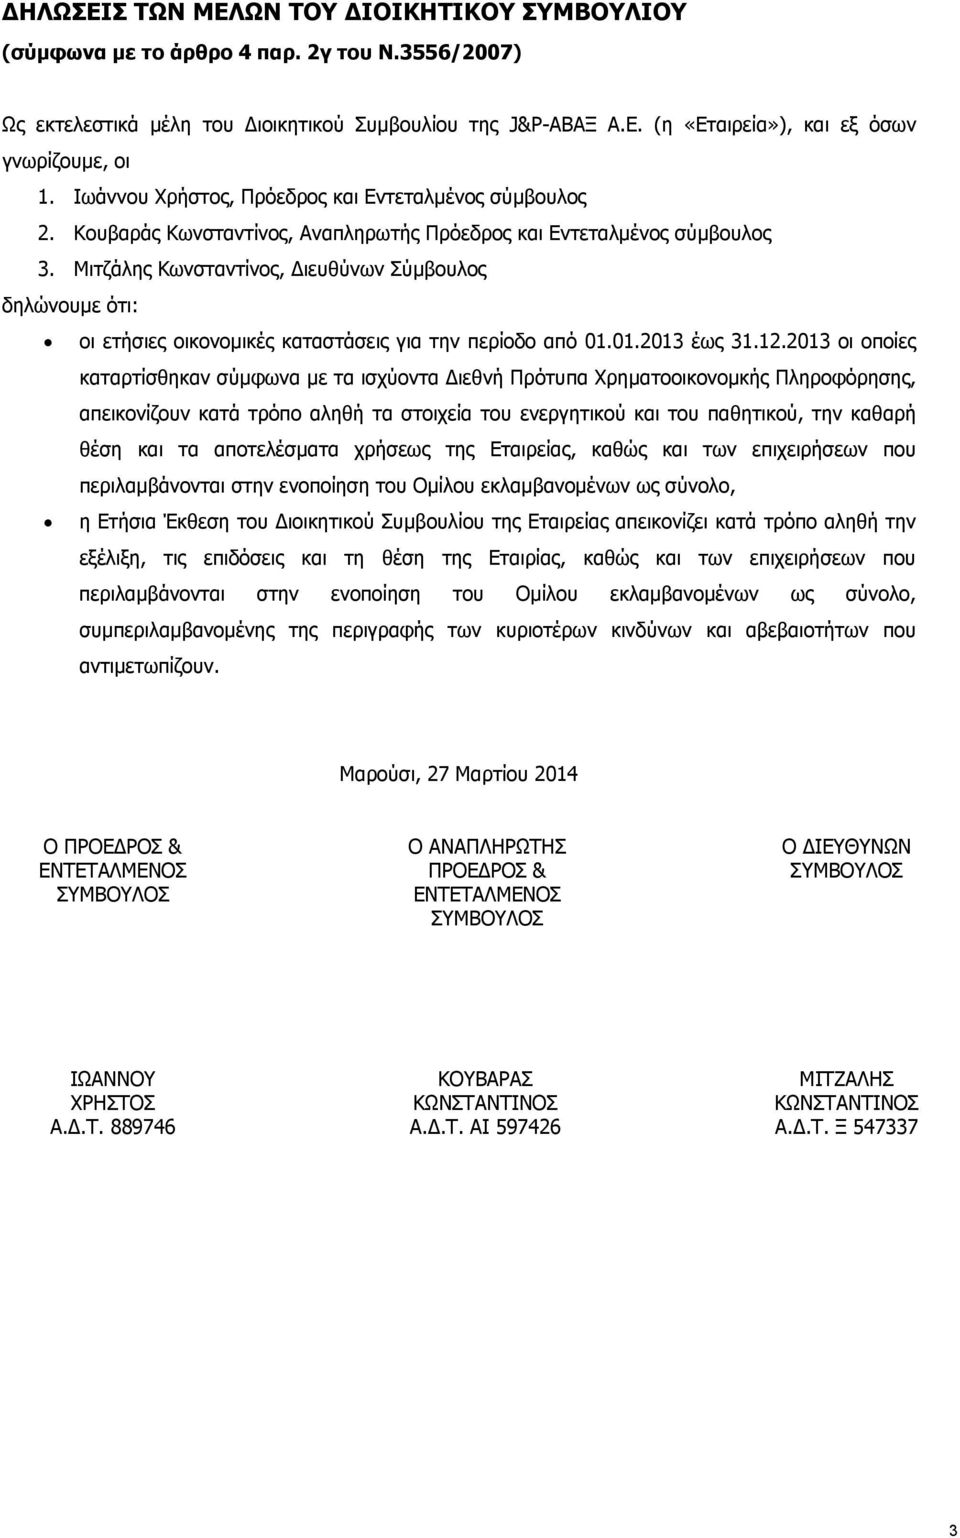 Μιτζάλης Κωνσταντίνος, ιευθύνων Σύμβουλος δηλώνουμε ότι: οι ετήσιες οικονομικές καταστάσεις για την περίοδο από 01.01.2013 έως 31.12.